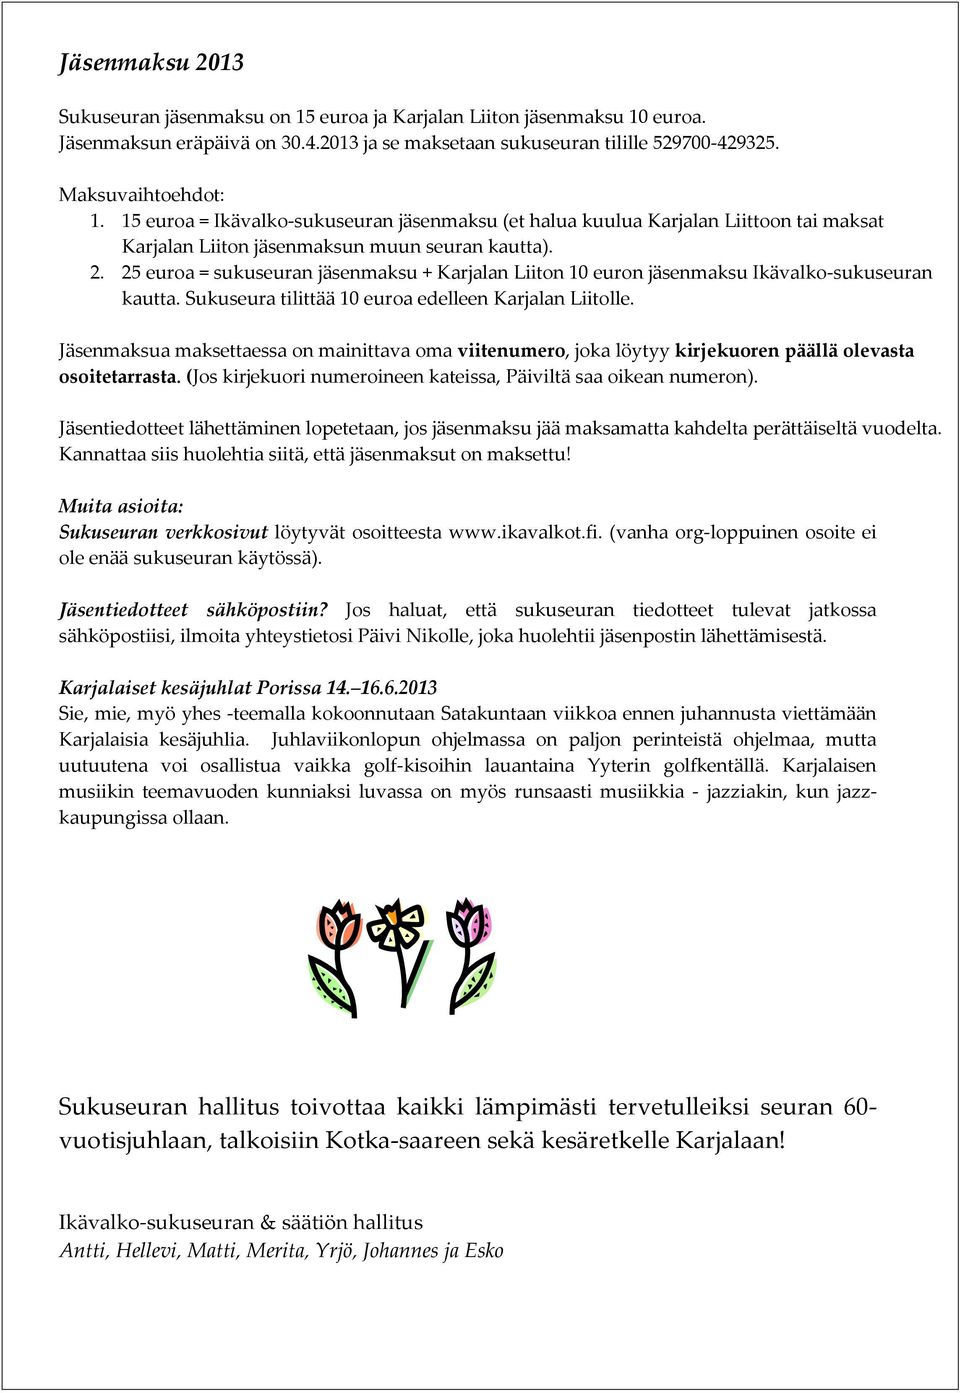 25 euroa = sukuseuran jäsenmaksu + Karjalan Liiton 10 euron jäsenmaksu Ikävalko-sukuseuran kautta. Sukuseura tilittää 10 euroa edelleen Karjalan Liitolle.